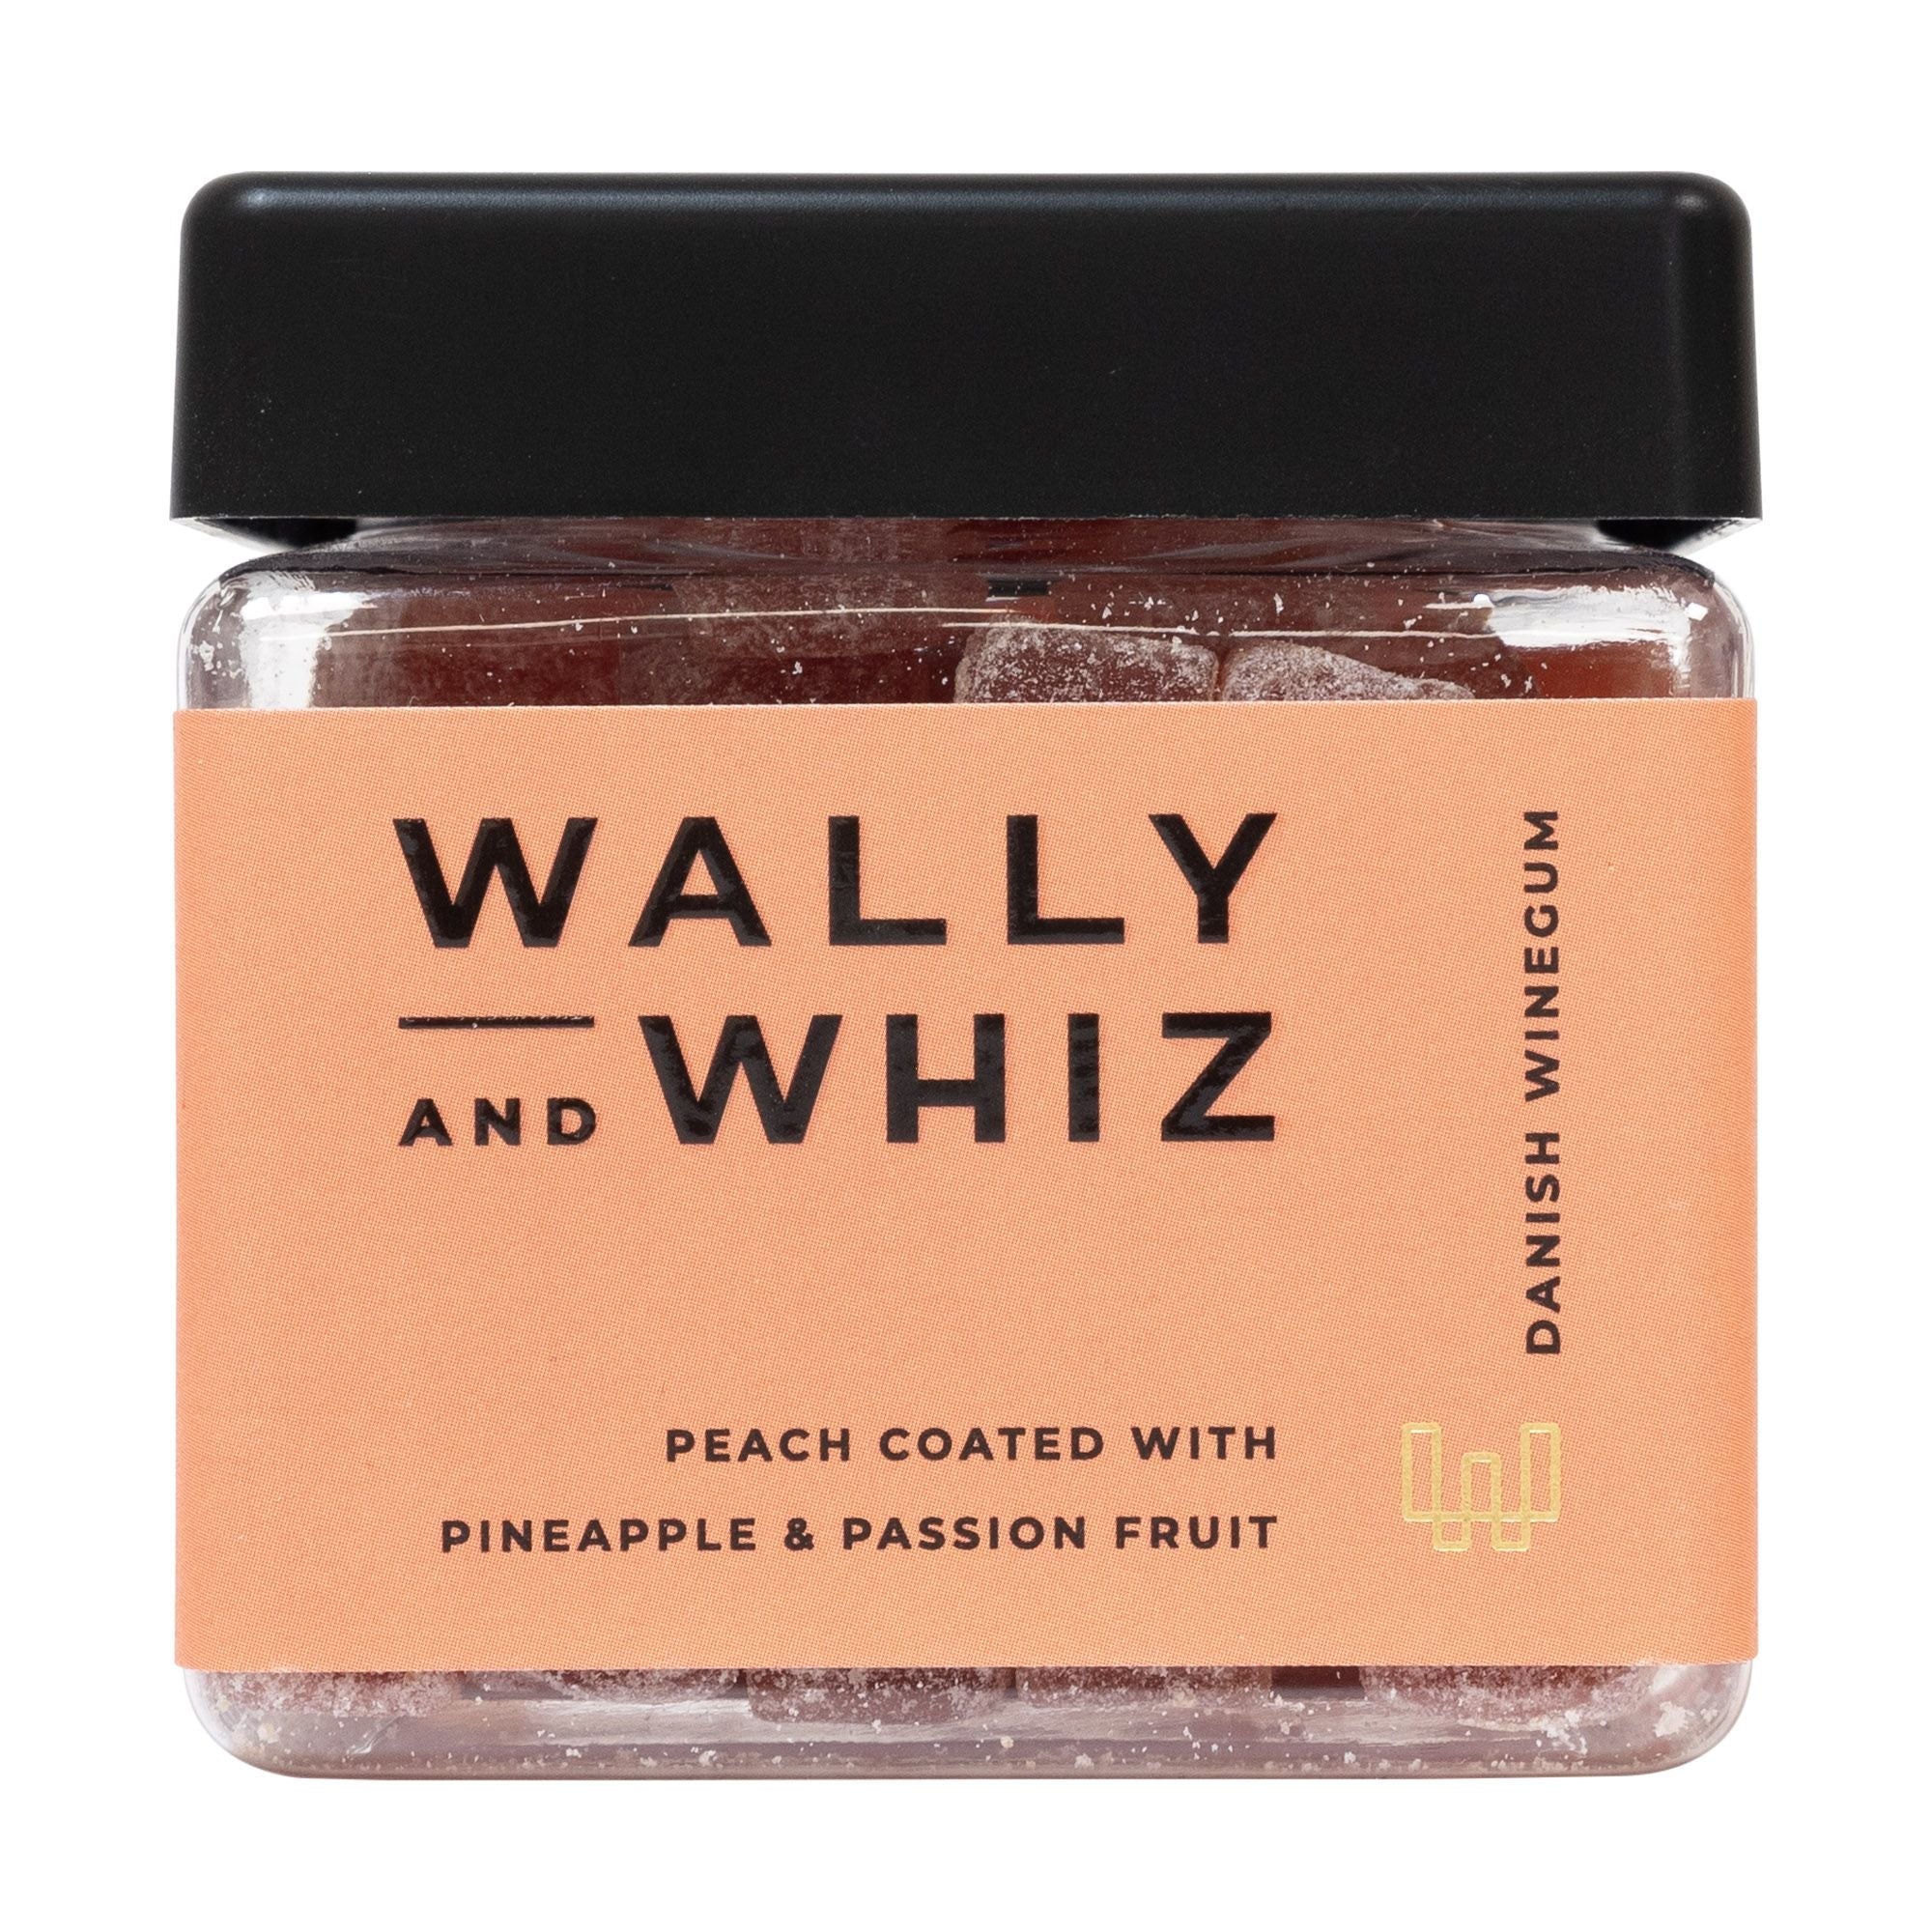 Wally and Whiz De cocktailbox, 420 g